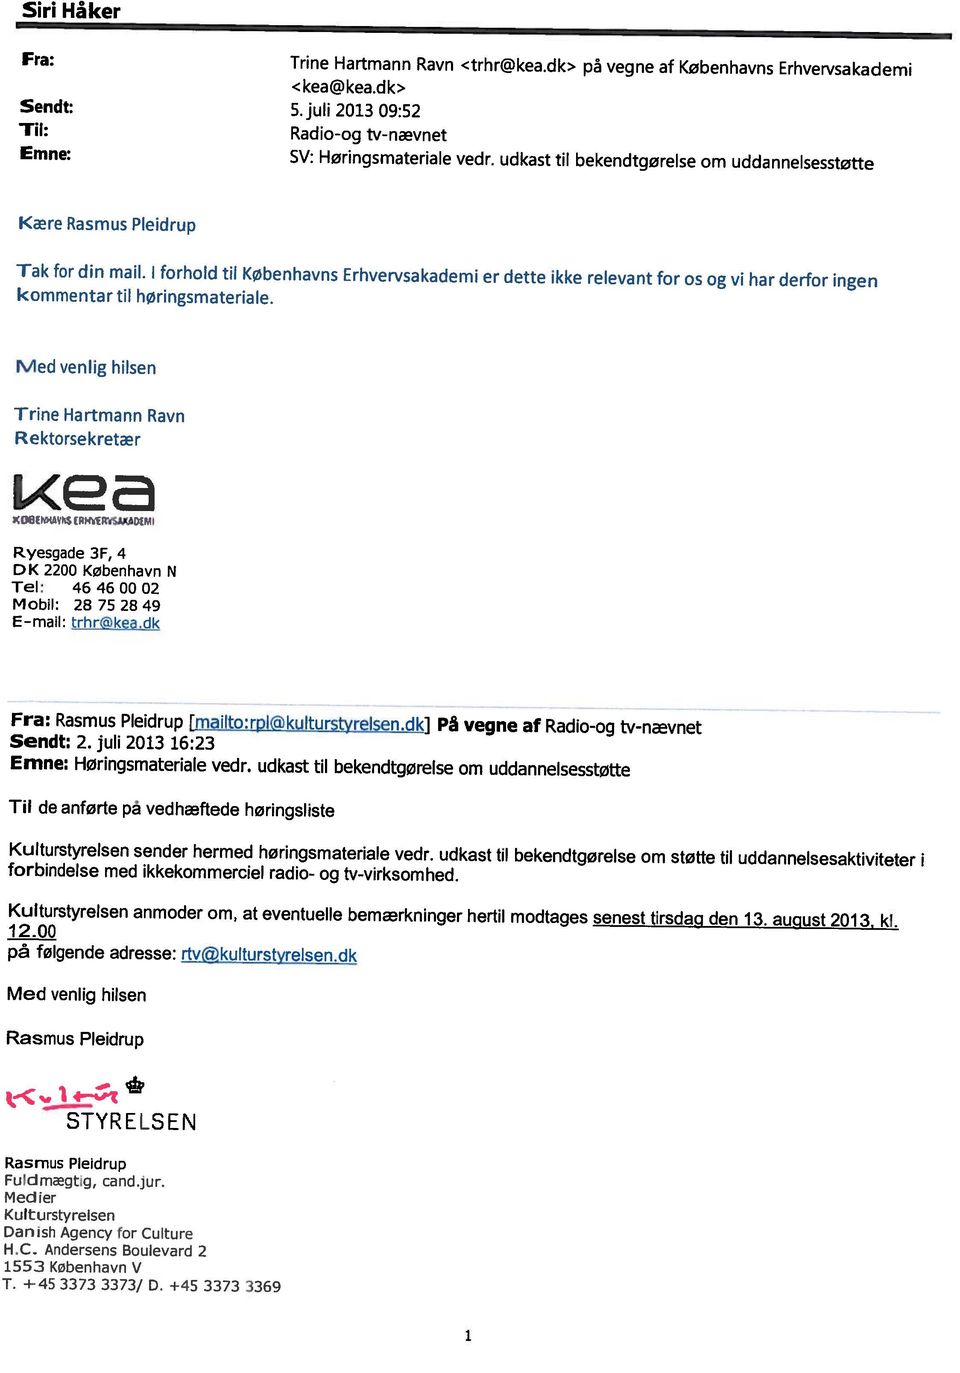 dk> pä vegne af Københavns Erhvervsakademi Emne: SV: Høringsmateriale vedr, udkast til bekendtgørelse om uddannelsesstøtte i T. +45 3373 3373/ D. +45 3373 3369 1553 København v H.C.